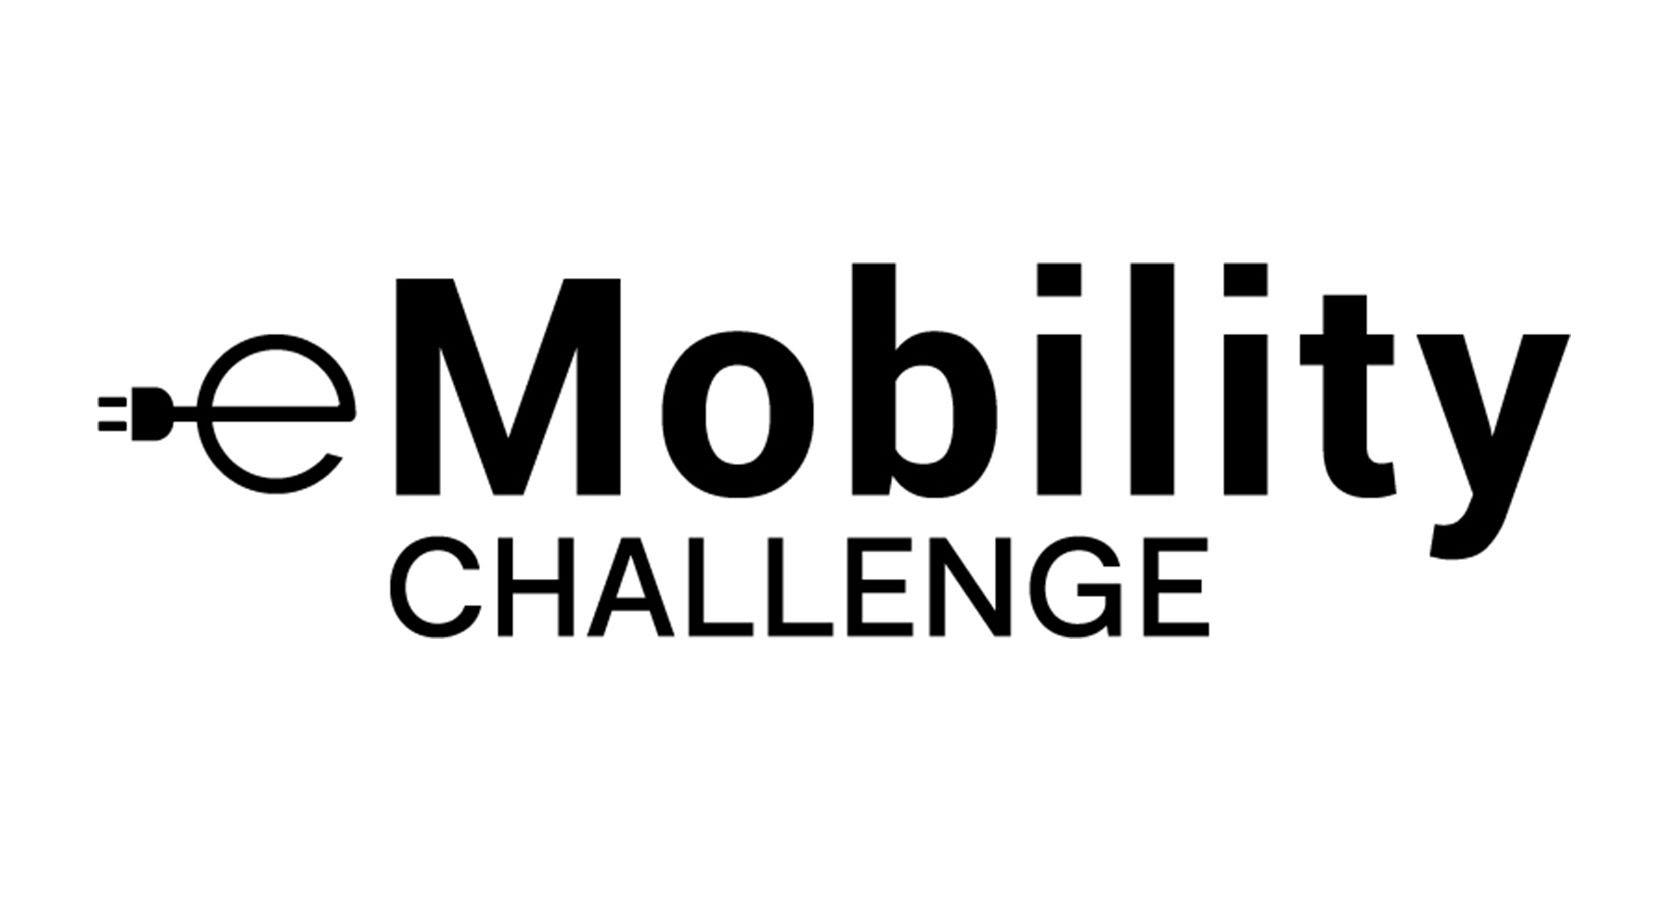 e-mobility challenge